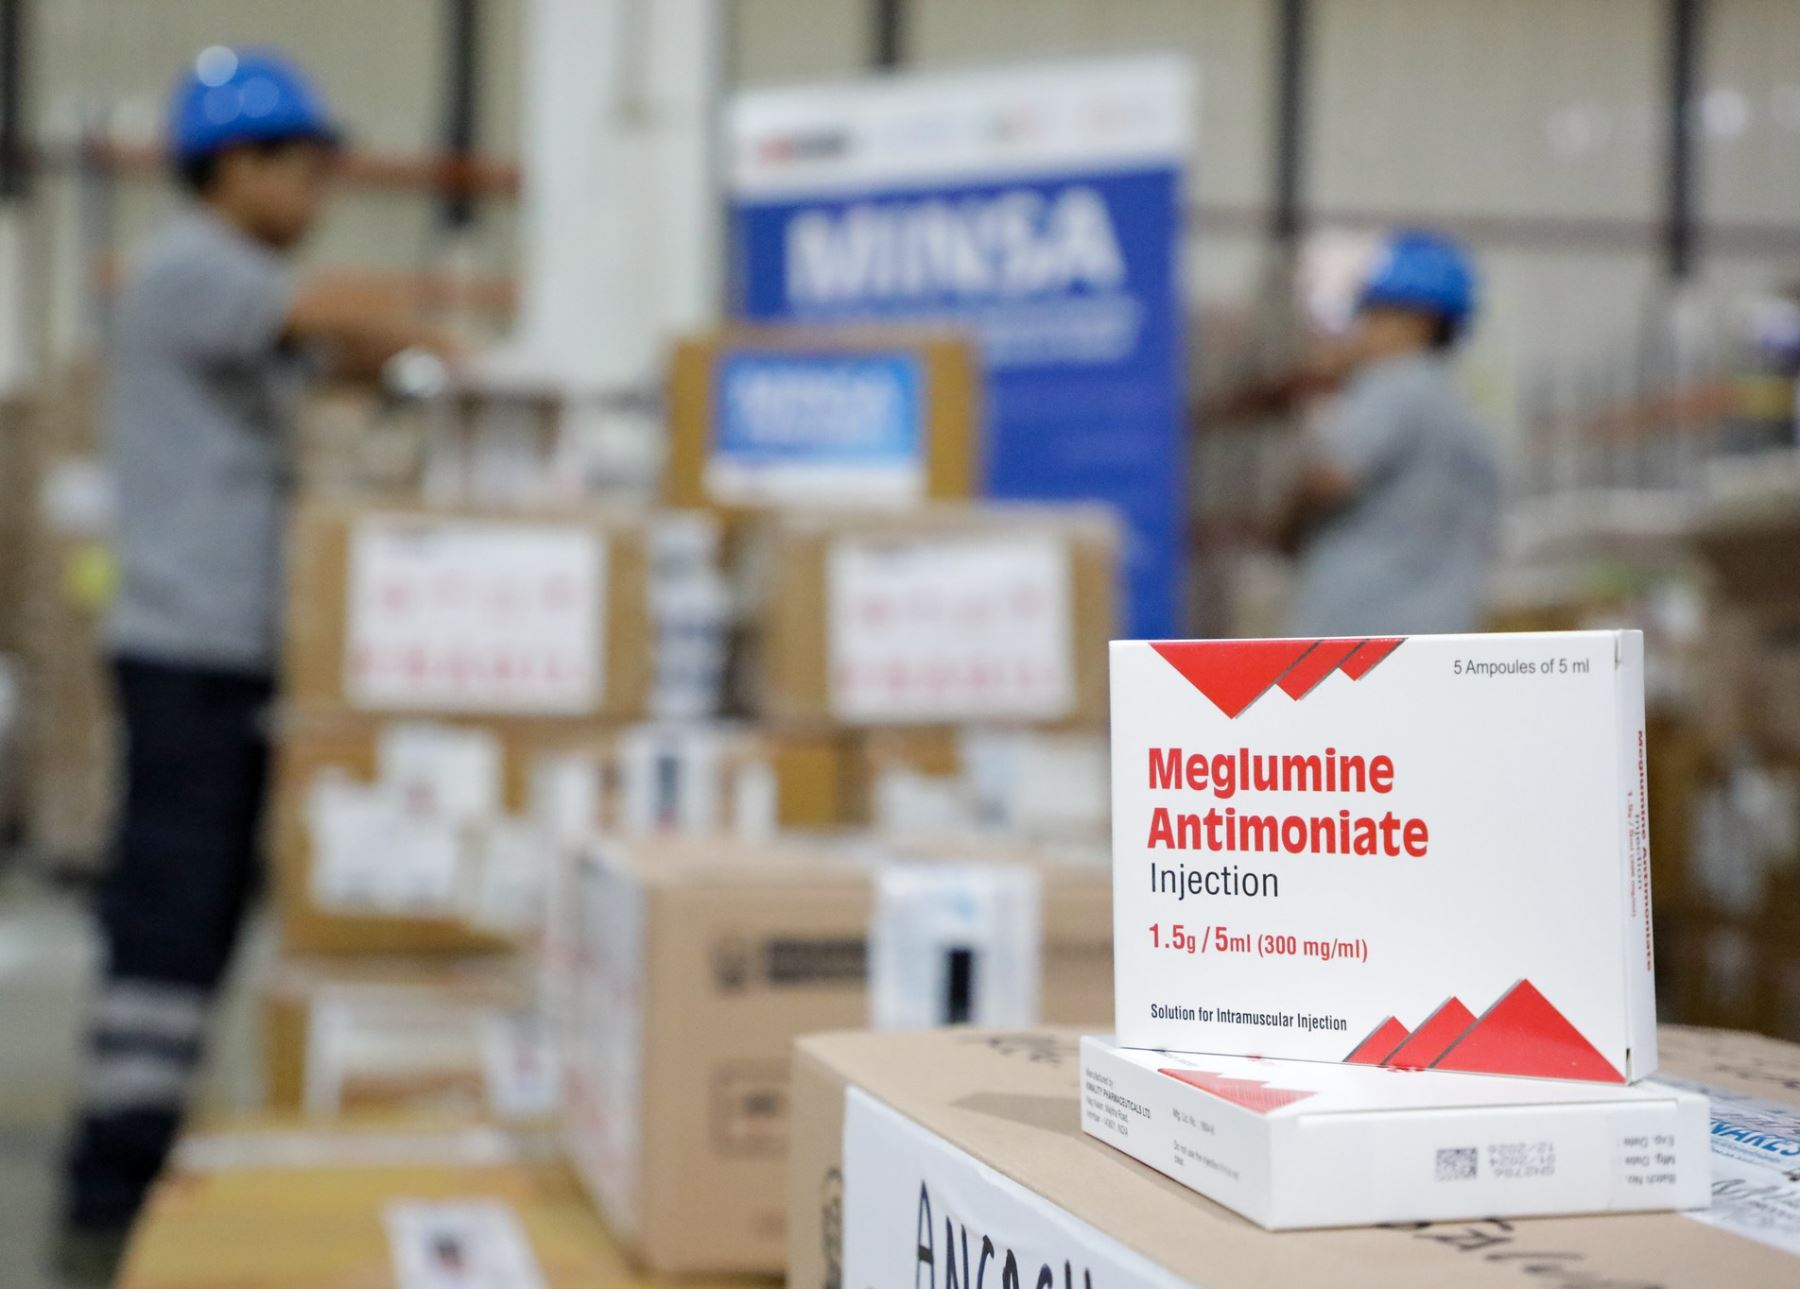 Ministerio de Salud inició la entrega de 90,000 ampollas para combatir la uta en nueve regiones priorizadas, las más afectadas por esta enfermedad. ANDINA/Difusión